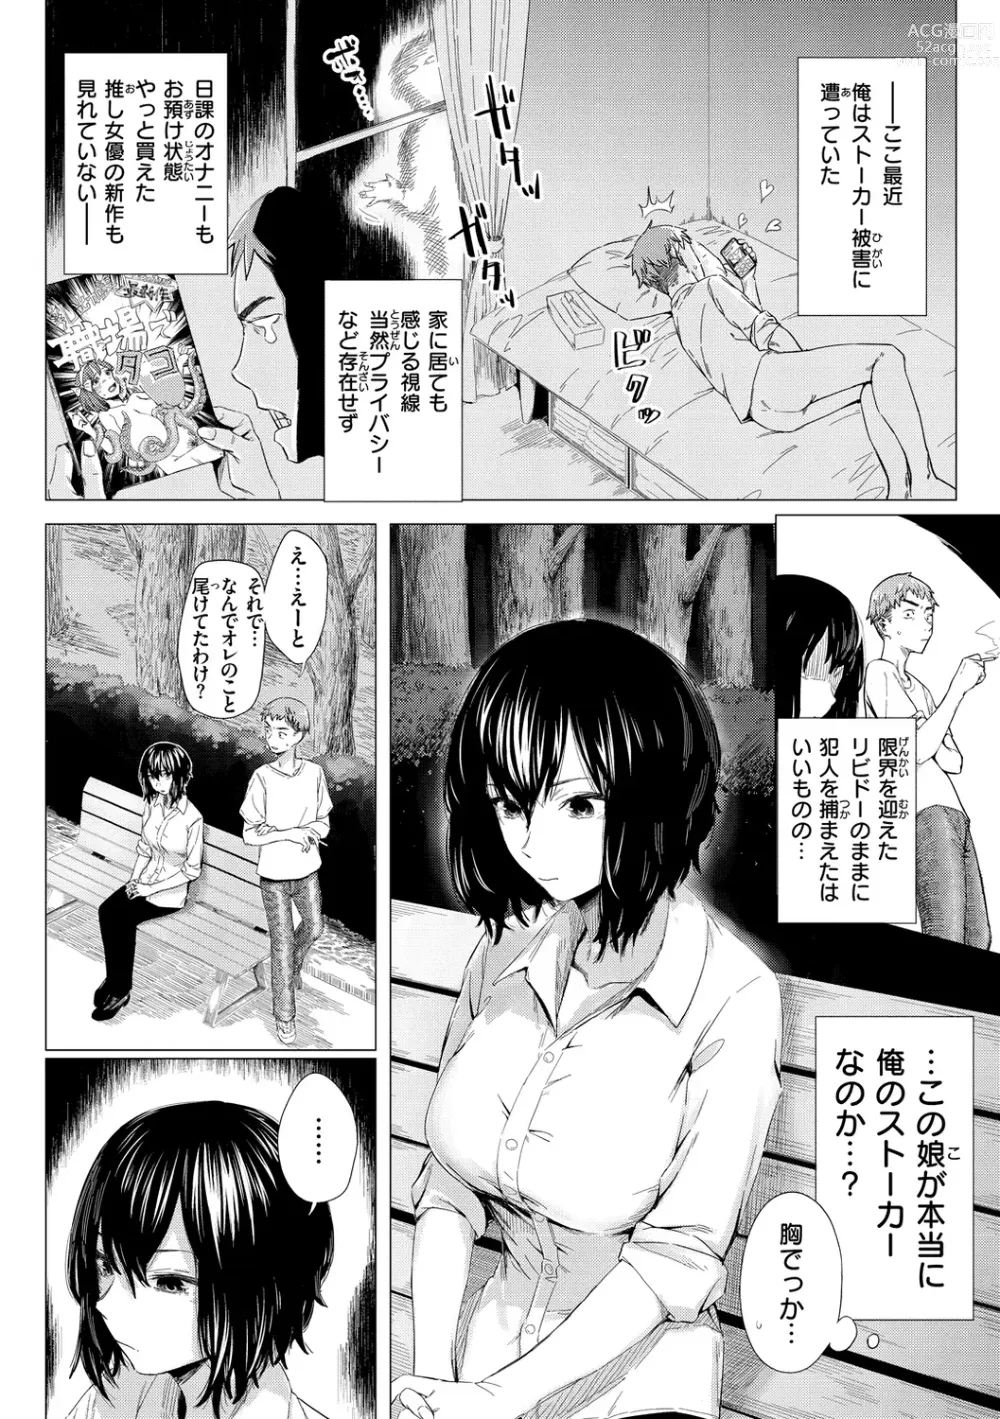 Page 146 of manga Yabai Onna